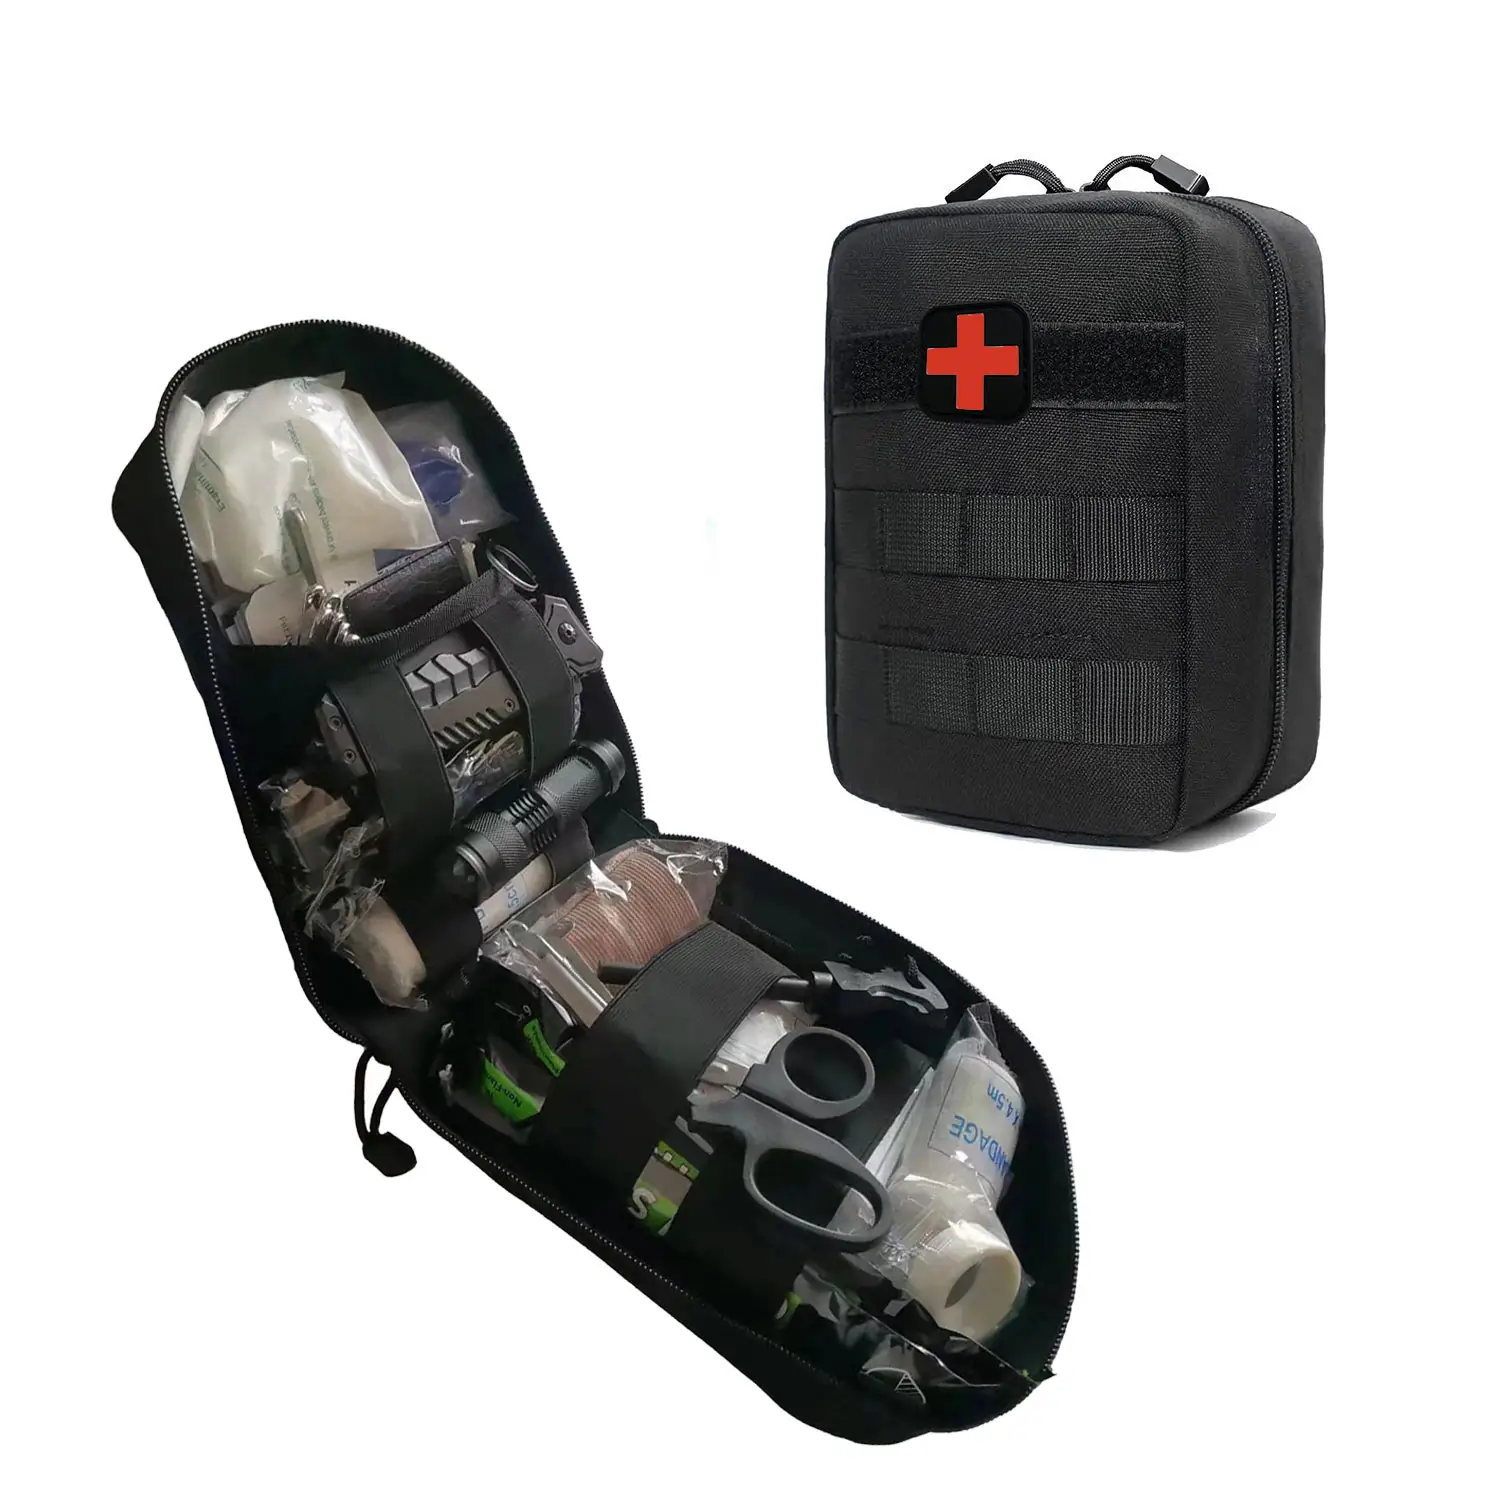 高品質の外傷バッグ緊急サバイバルキットIFAK屋外旅行キャンプハイキング用の戦術的な応急処置キット